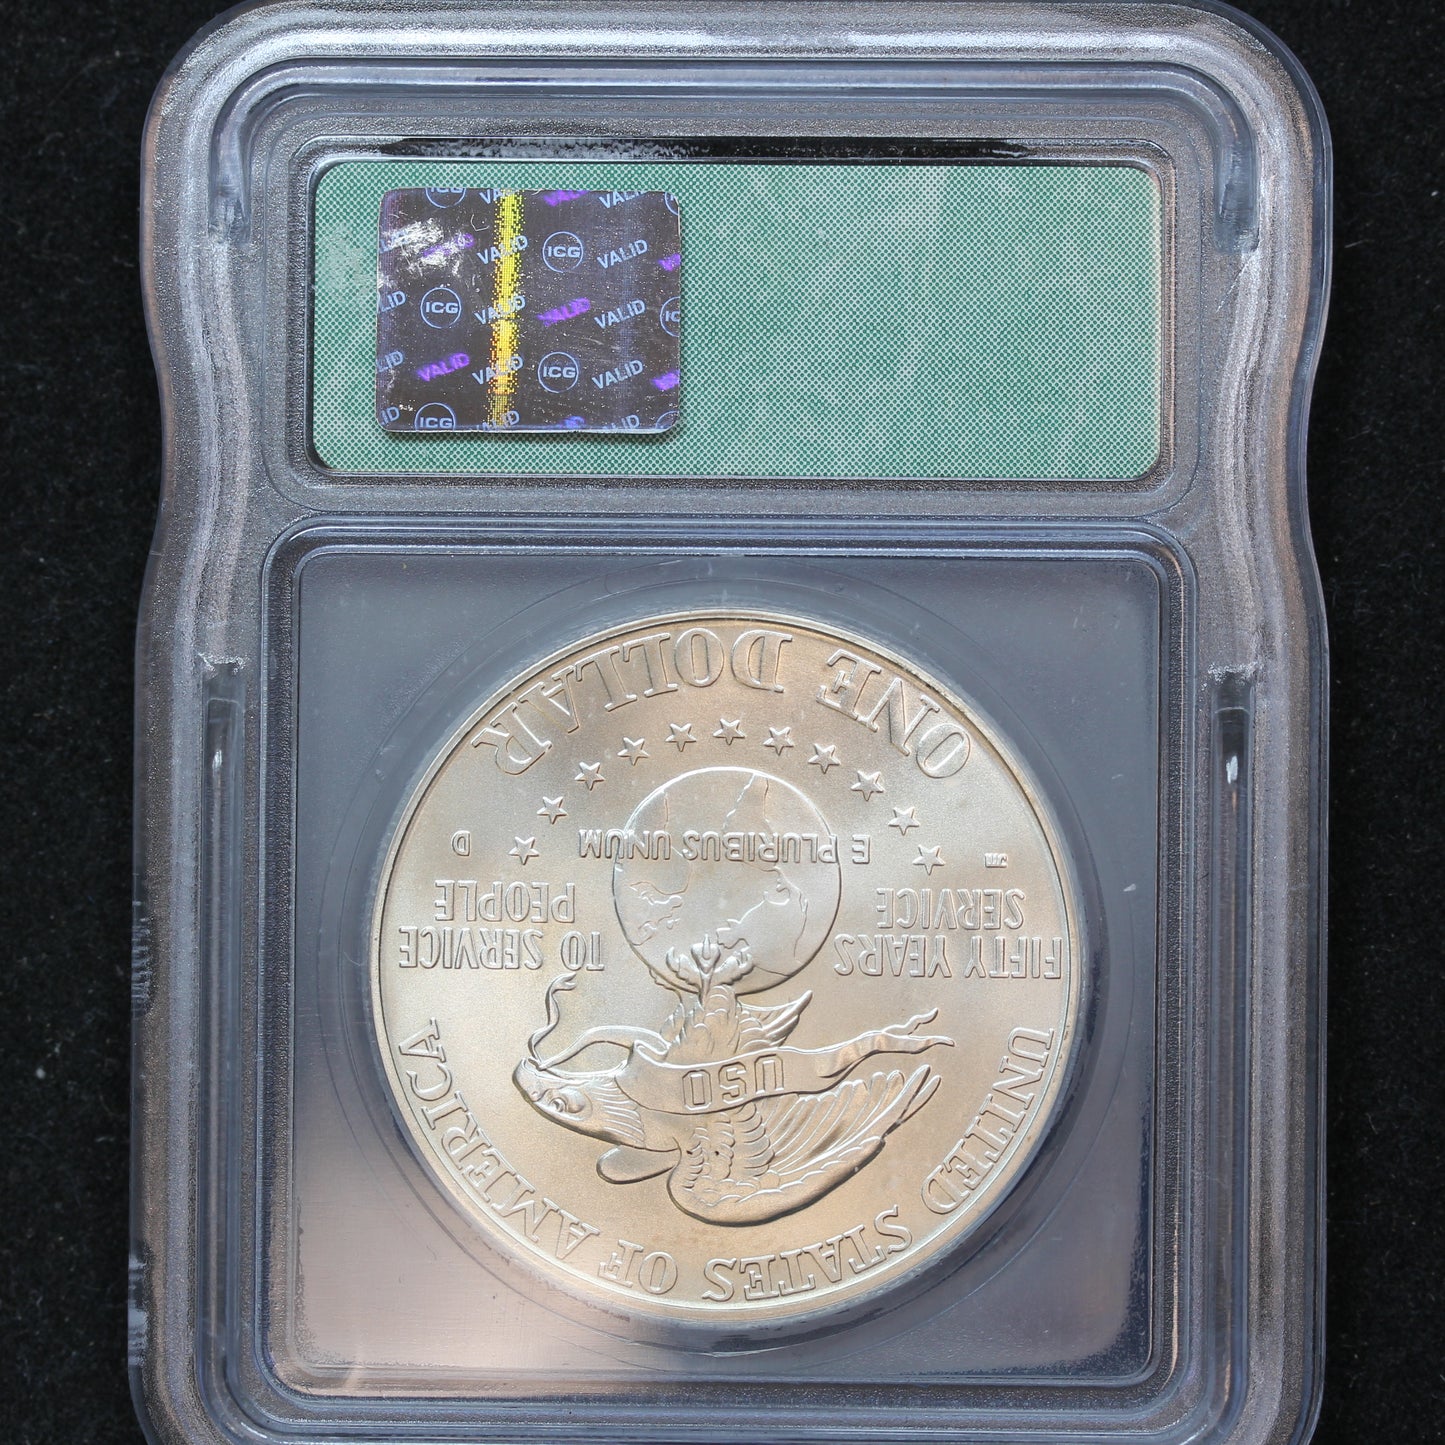 1991 D USO Commemorative Silver $1 - ICG MS 70